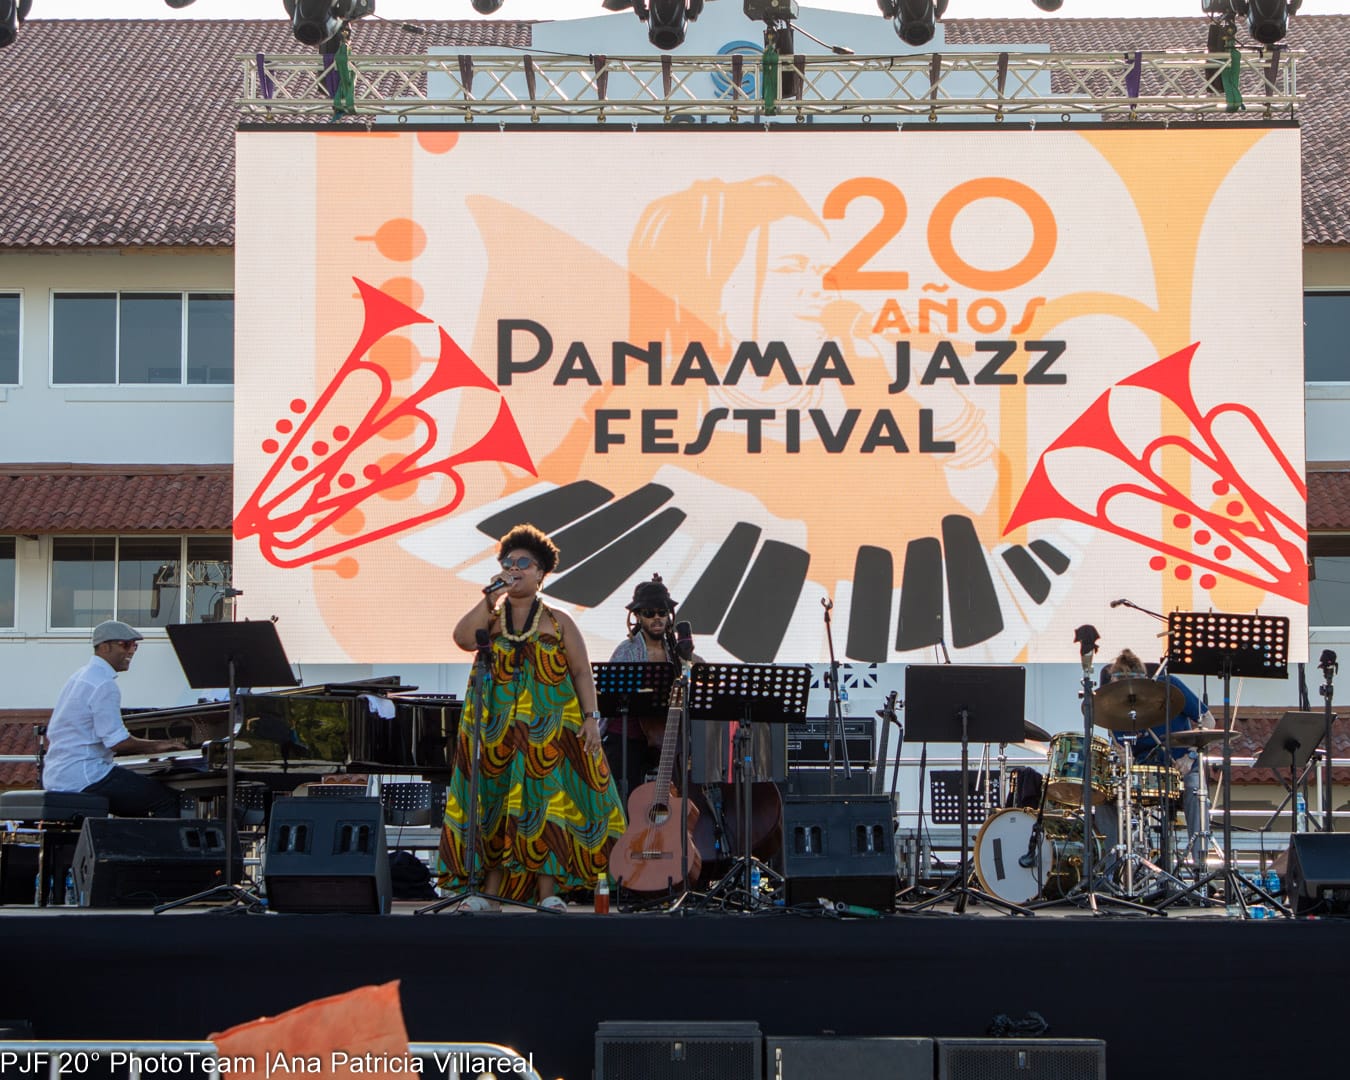 Gran cierre del Panama Jazz Festival a su máxima capacidad – La Verdad  Panamá